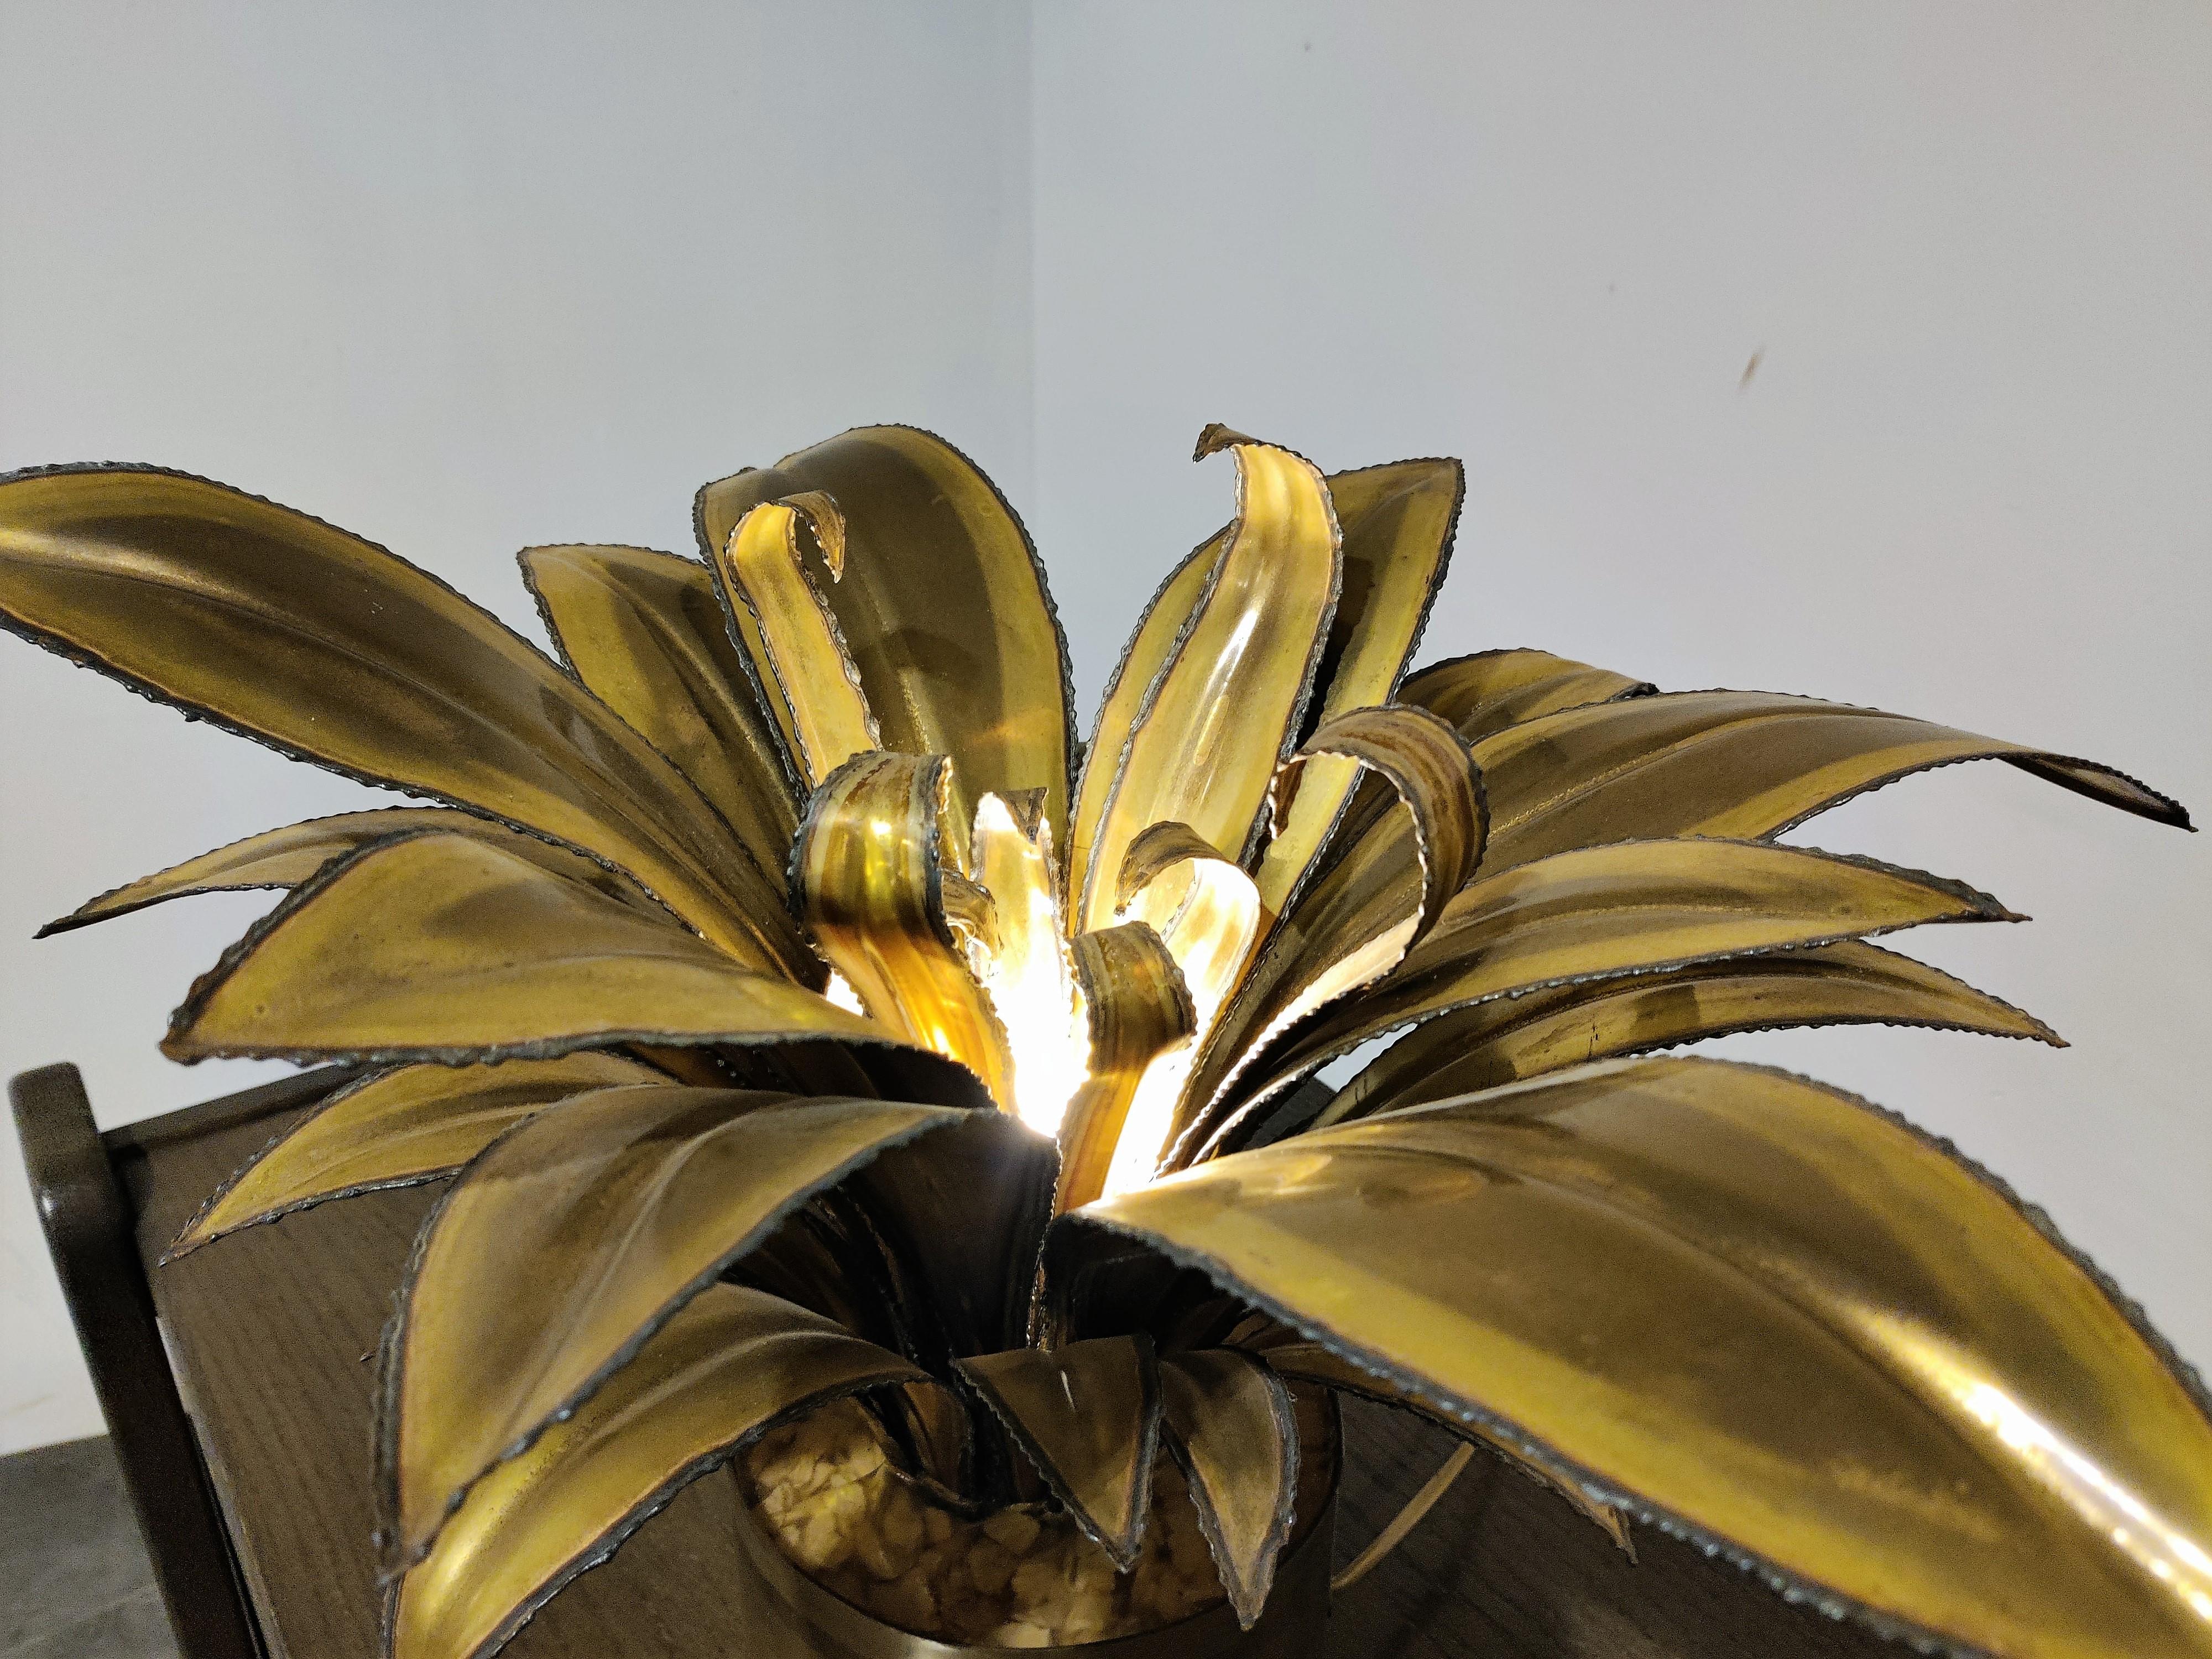 Magnifique lampe de table en laiton taillé au chalumeau et fleuri par Maison jansen.

Cette lampe fleurie possède un point lumineux central et émet une belle lumière chaude.

Bon état d'origine, testé et prêt à l'emploi.

La lampe a une base